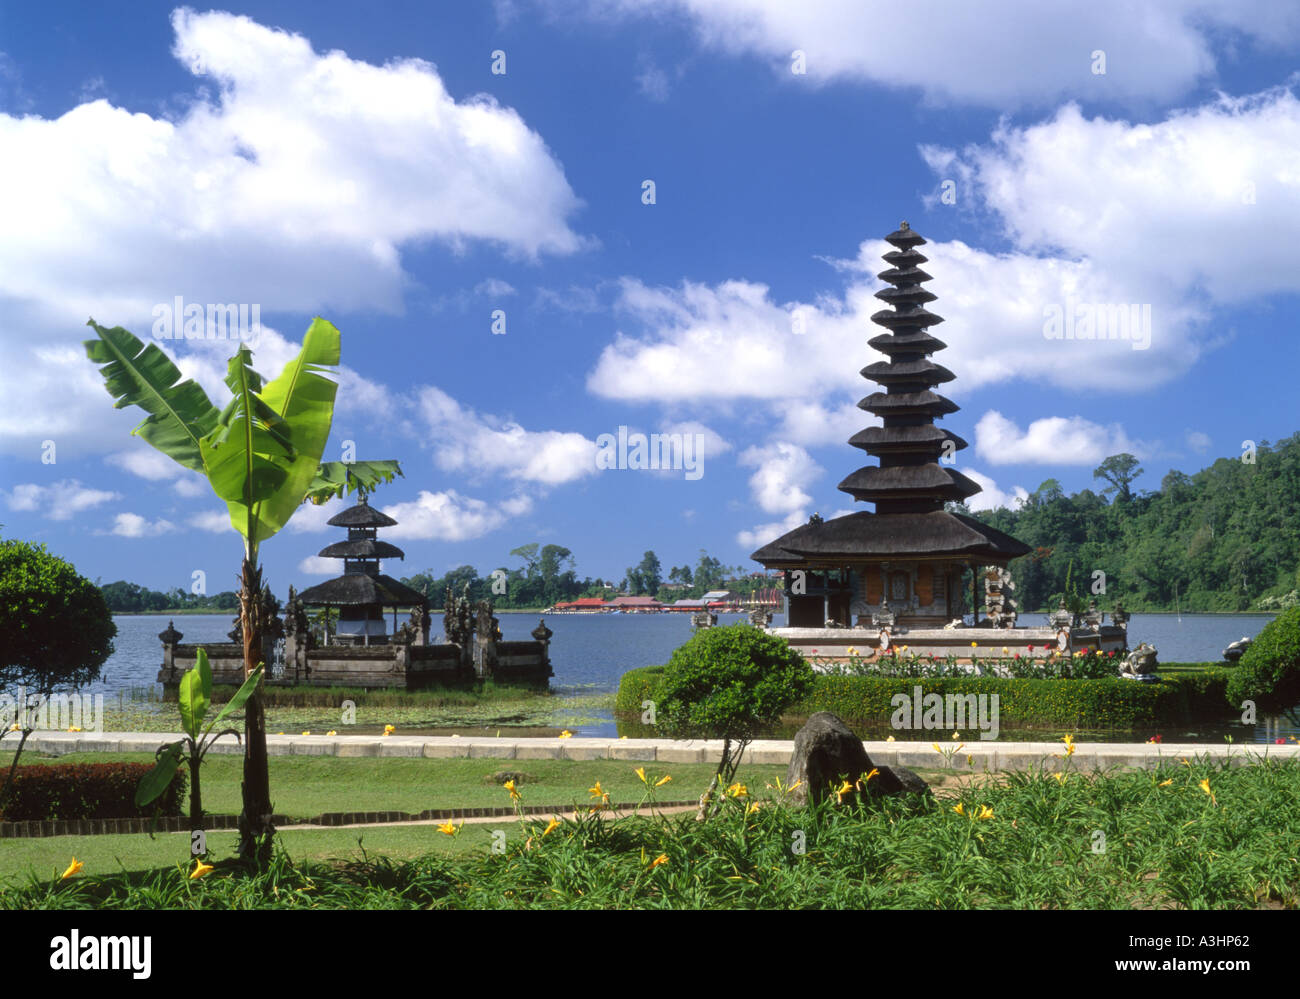 temple on the lake puru ulun dano bratan kandikuning bali indonesia Stock Photo